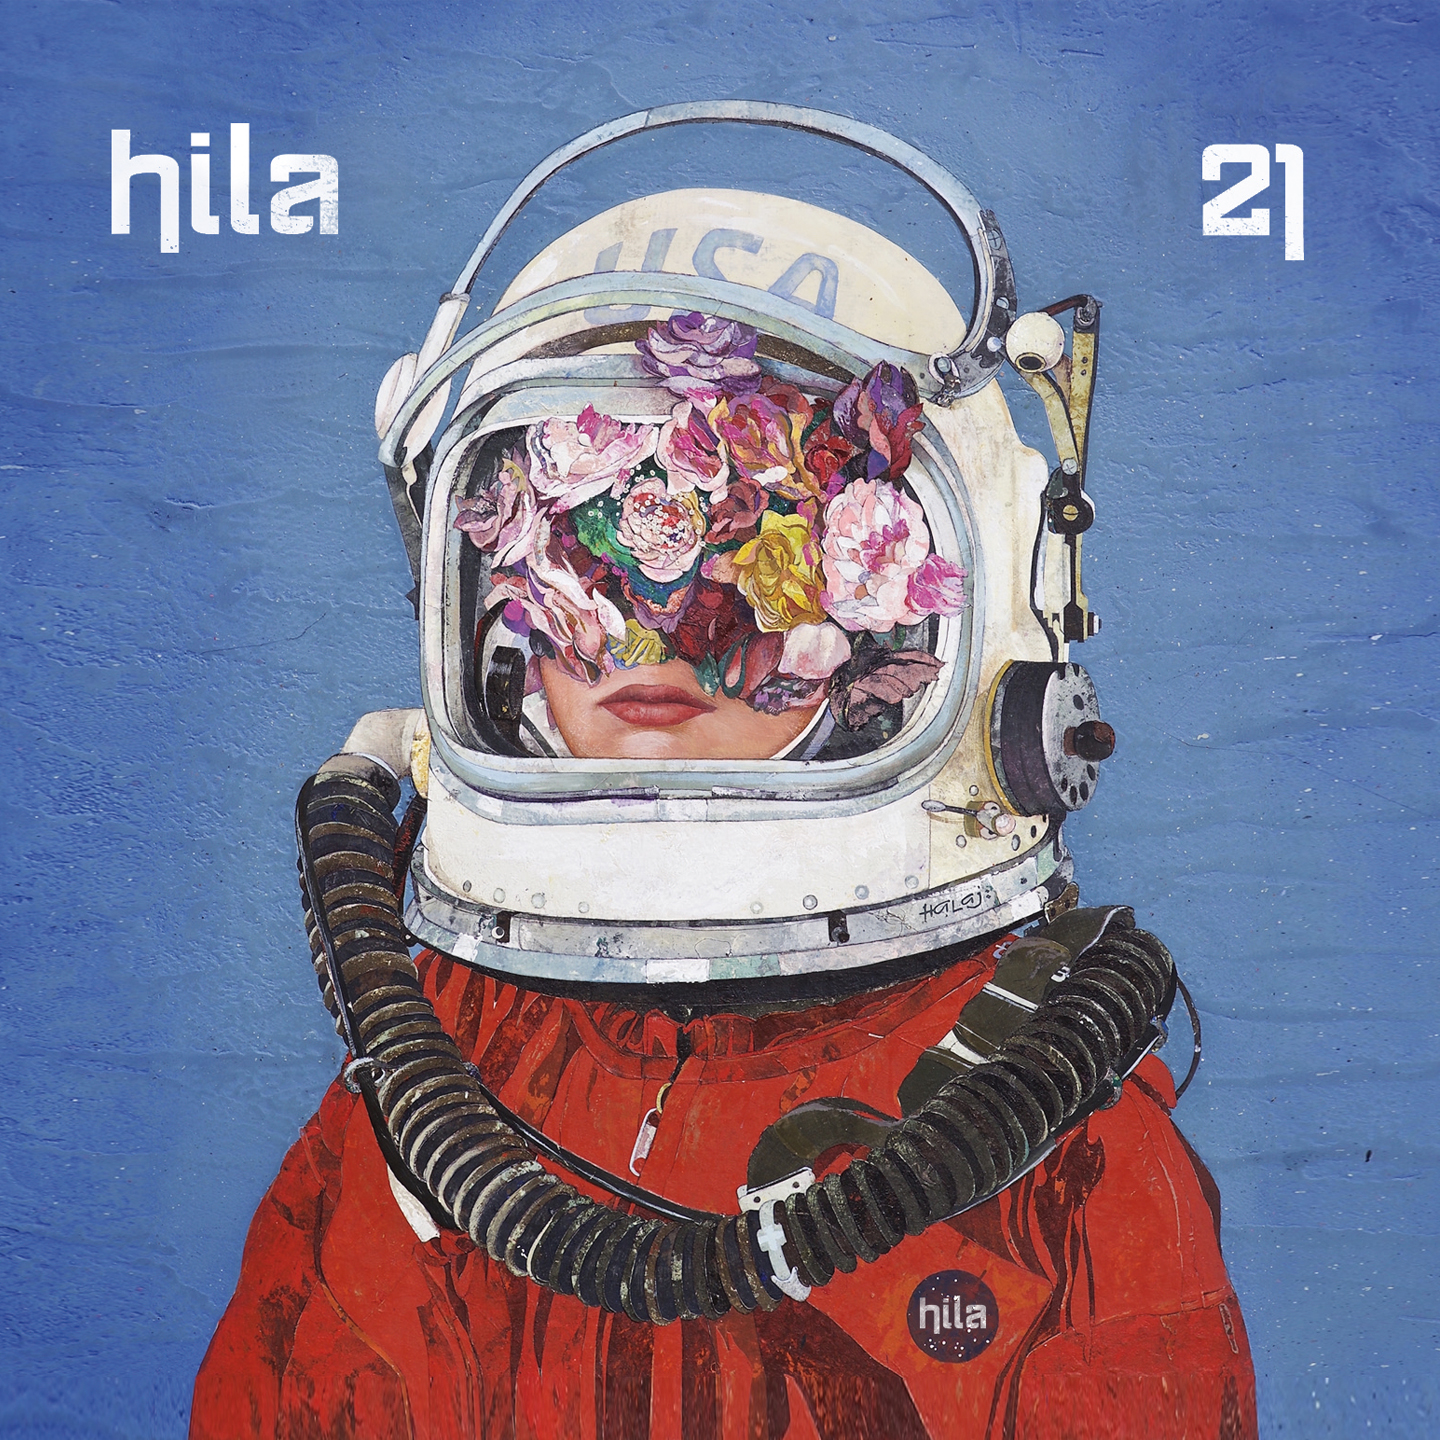 Hila insuffle des son arméniens dans l'album 21